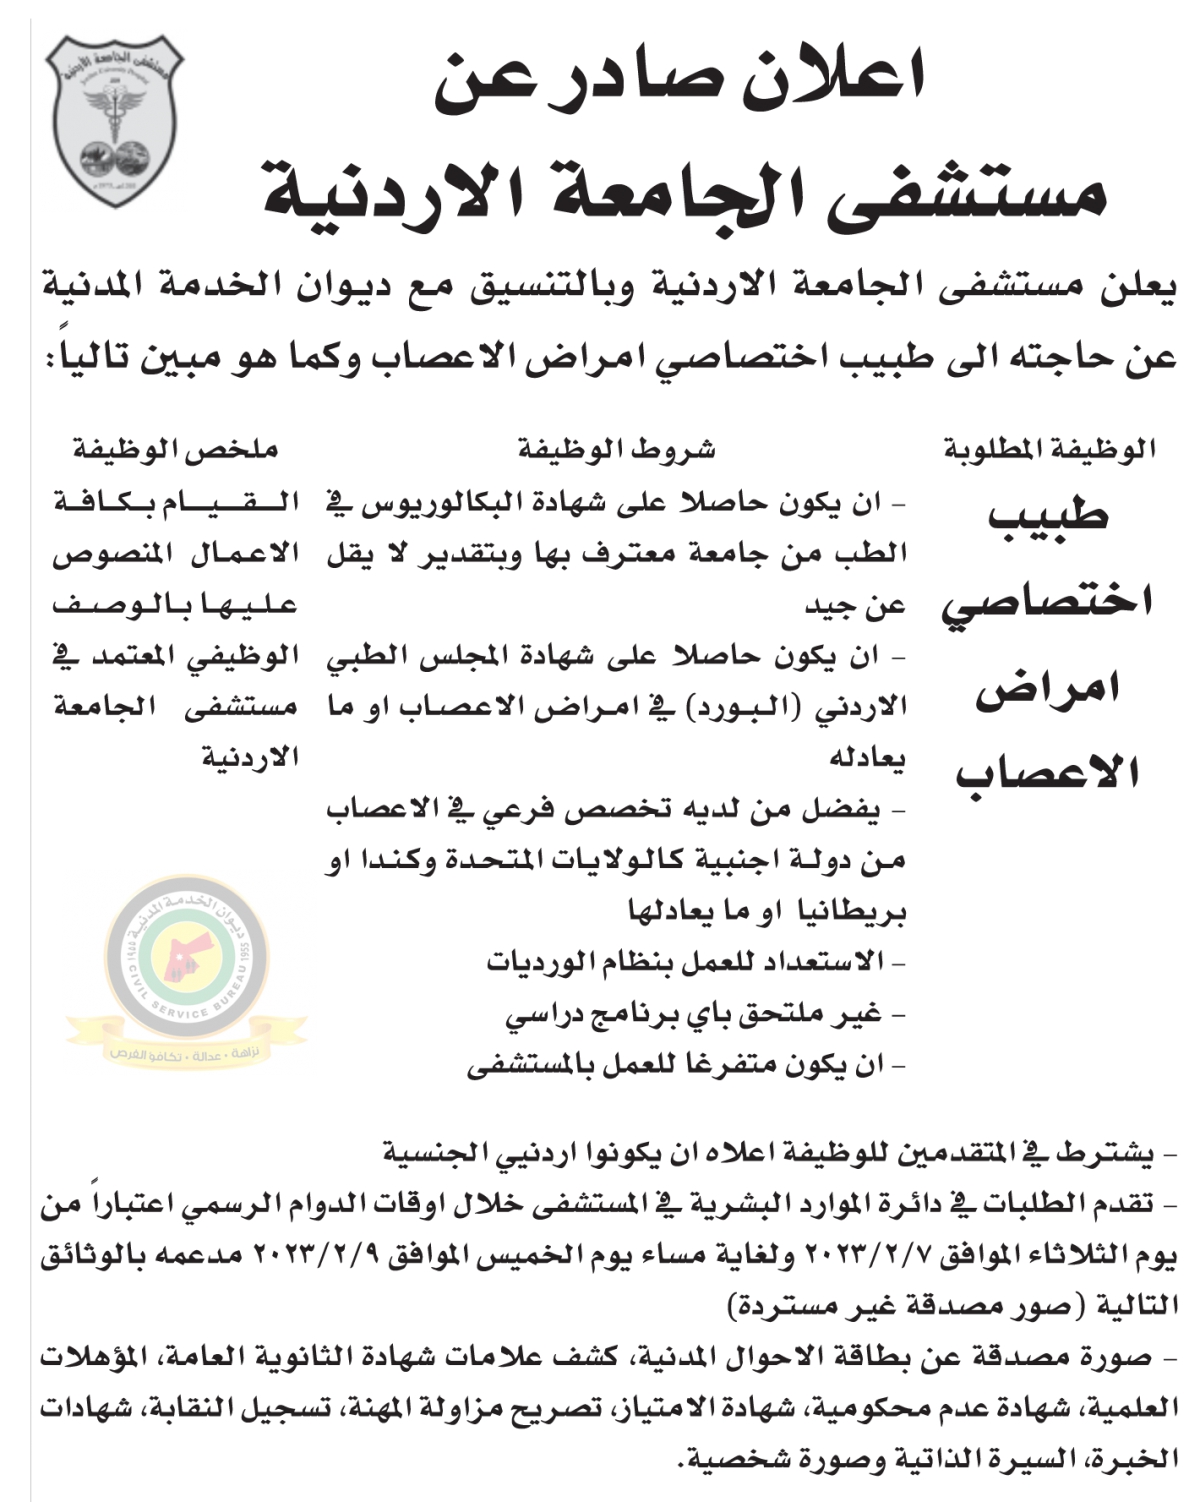 اعلان وظائف شاغرة طبيب اختصاصي امراض الاعصاب صادرعن مستشفى الجامعة الأردنية